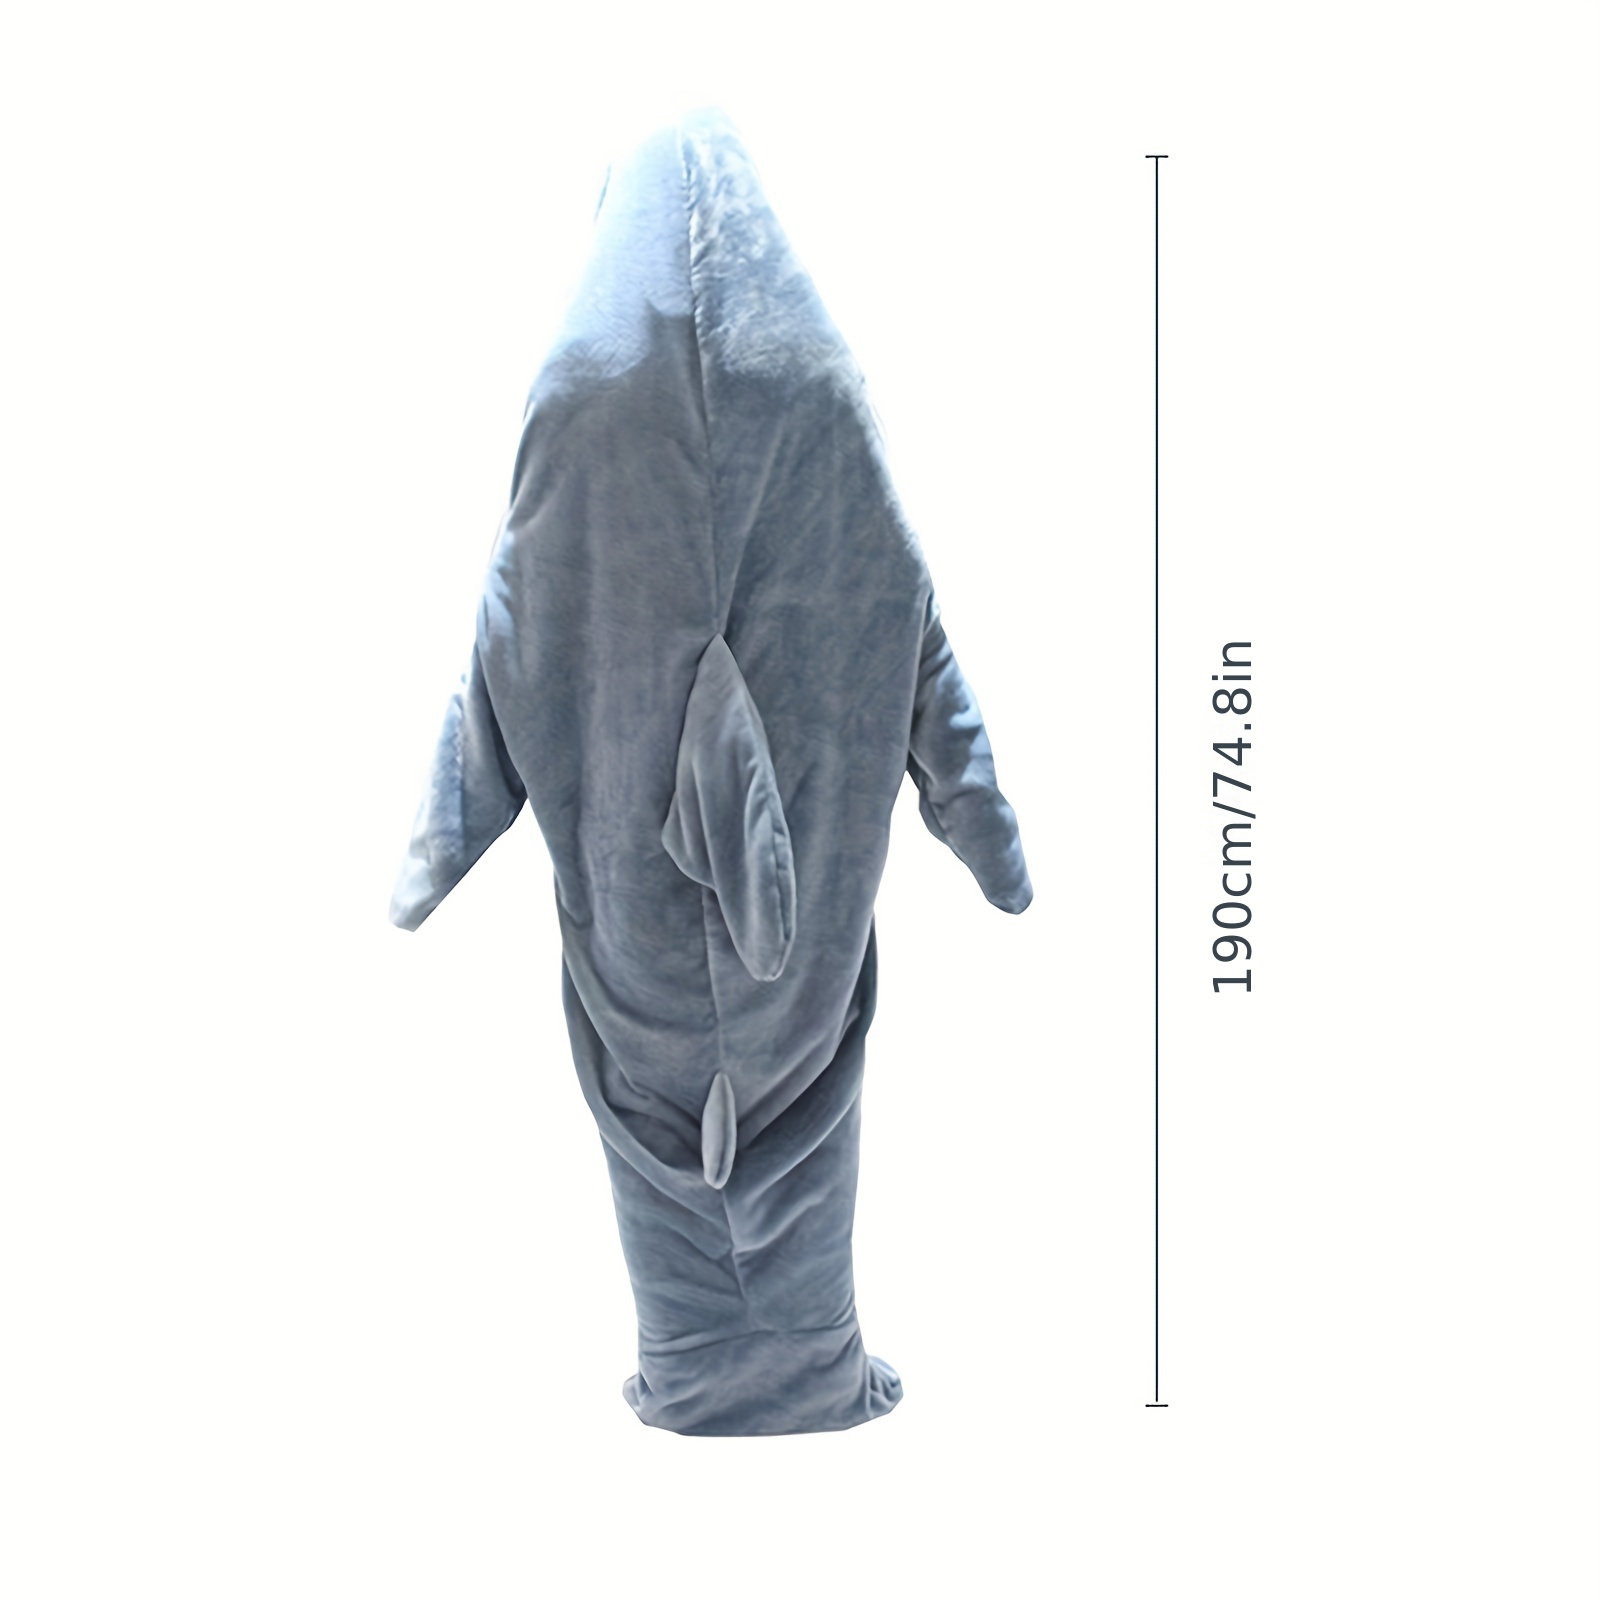  Manta de tiburón para adultos, súper suave y acogedora sudadera  con capucha de franela con capucha de tiburón, saco de dormir de forro  polar, manta de tiburón (S-55 pulgadas x 27.5